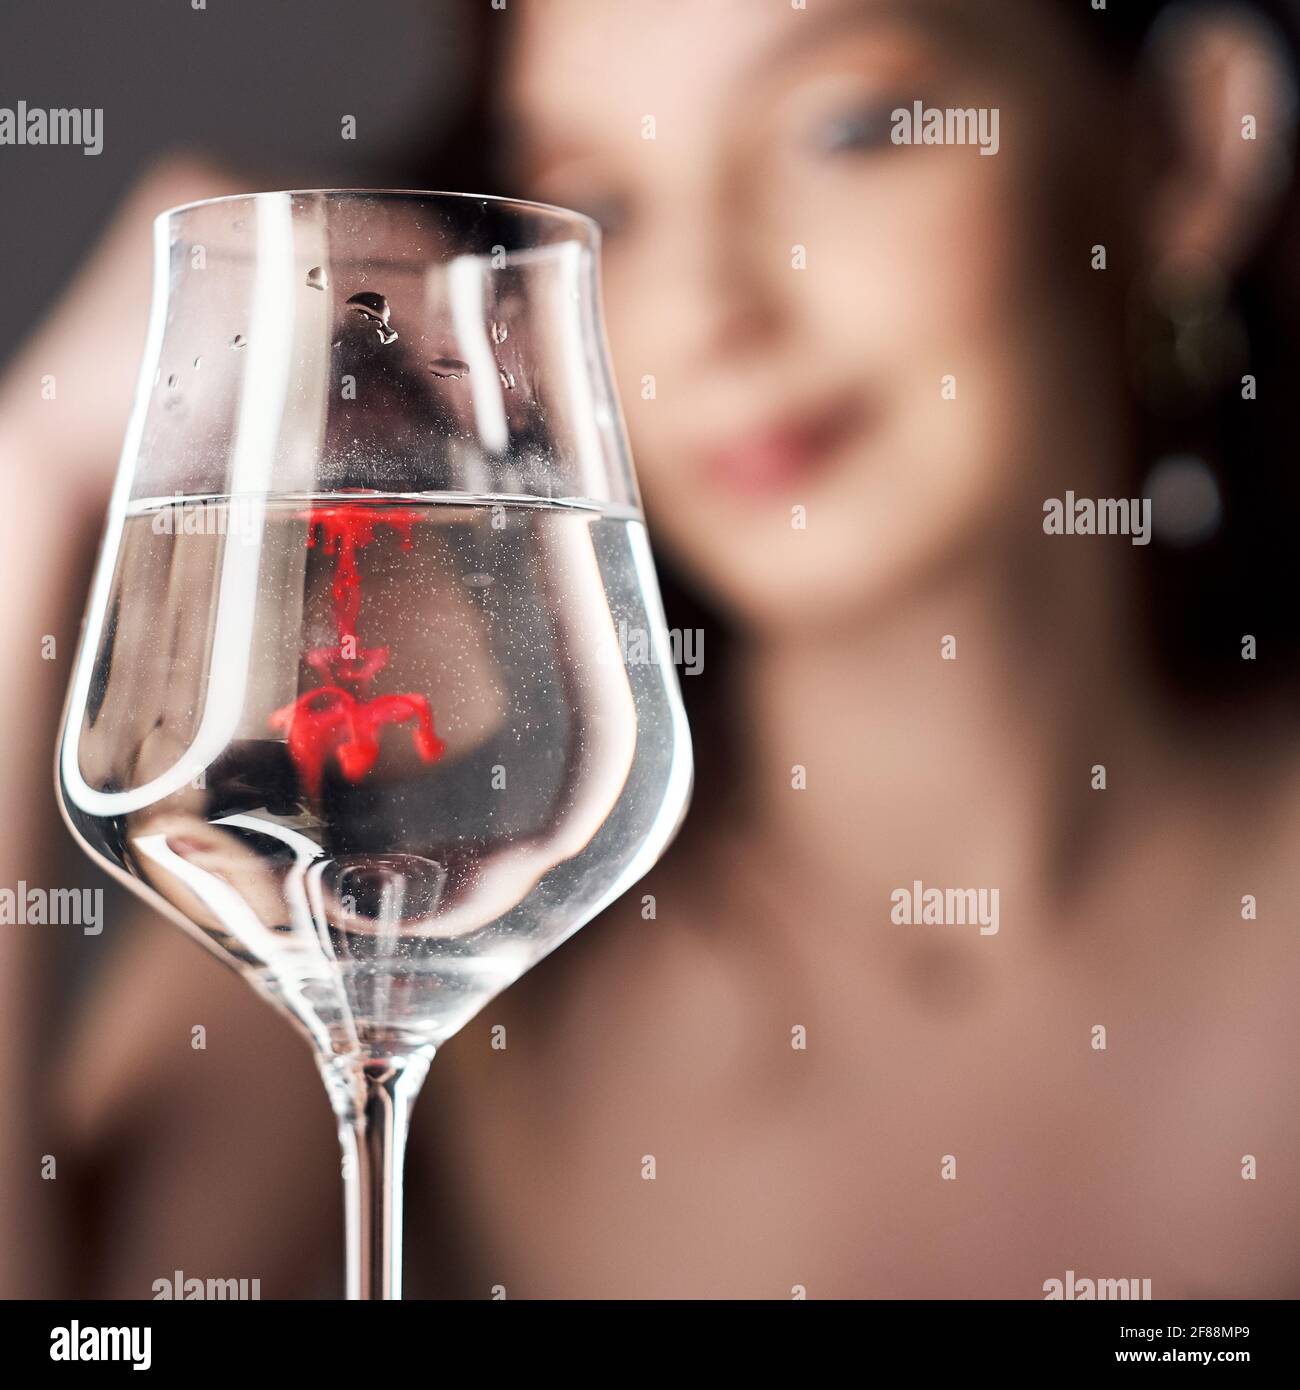 Gouttes de peinture rouge dans un verre d'eau, une femme regarde le verre. Banque D'Images